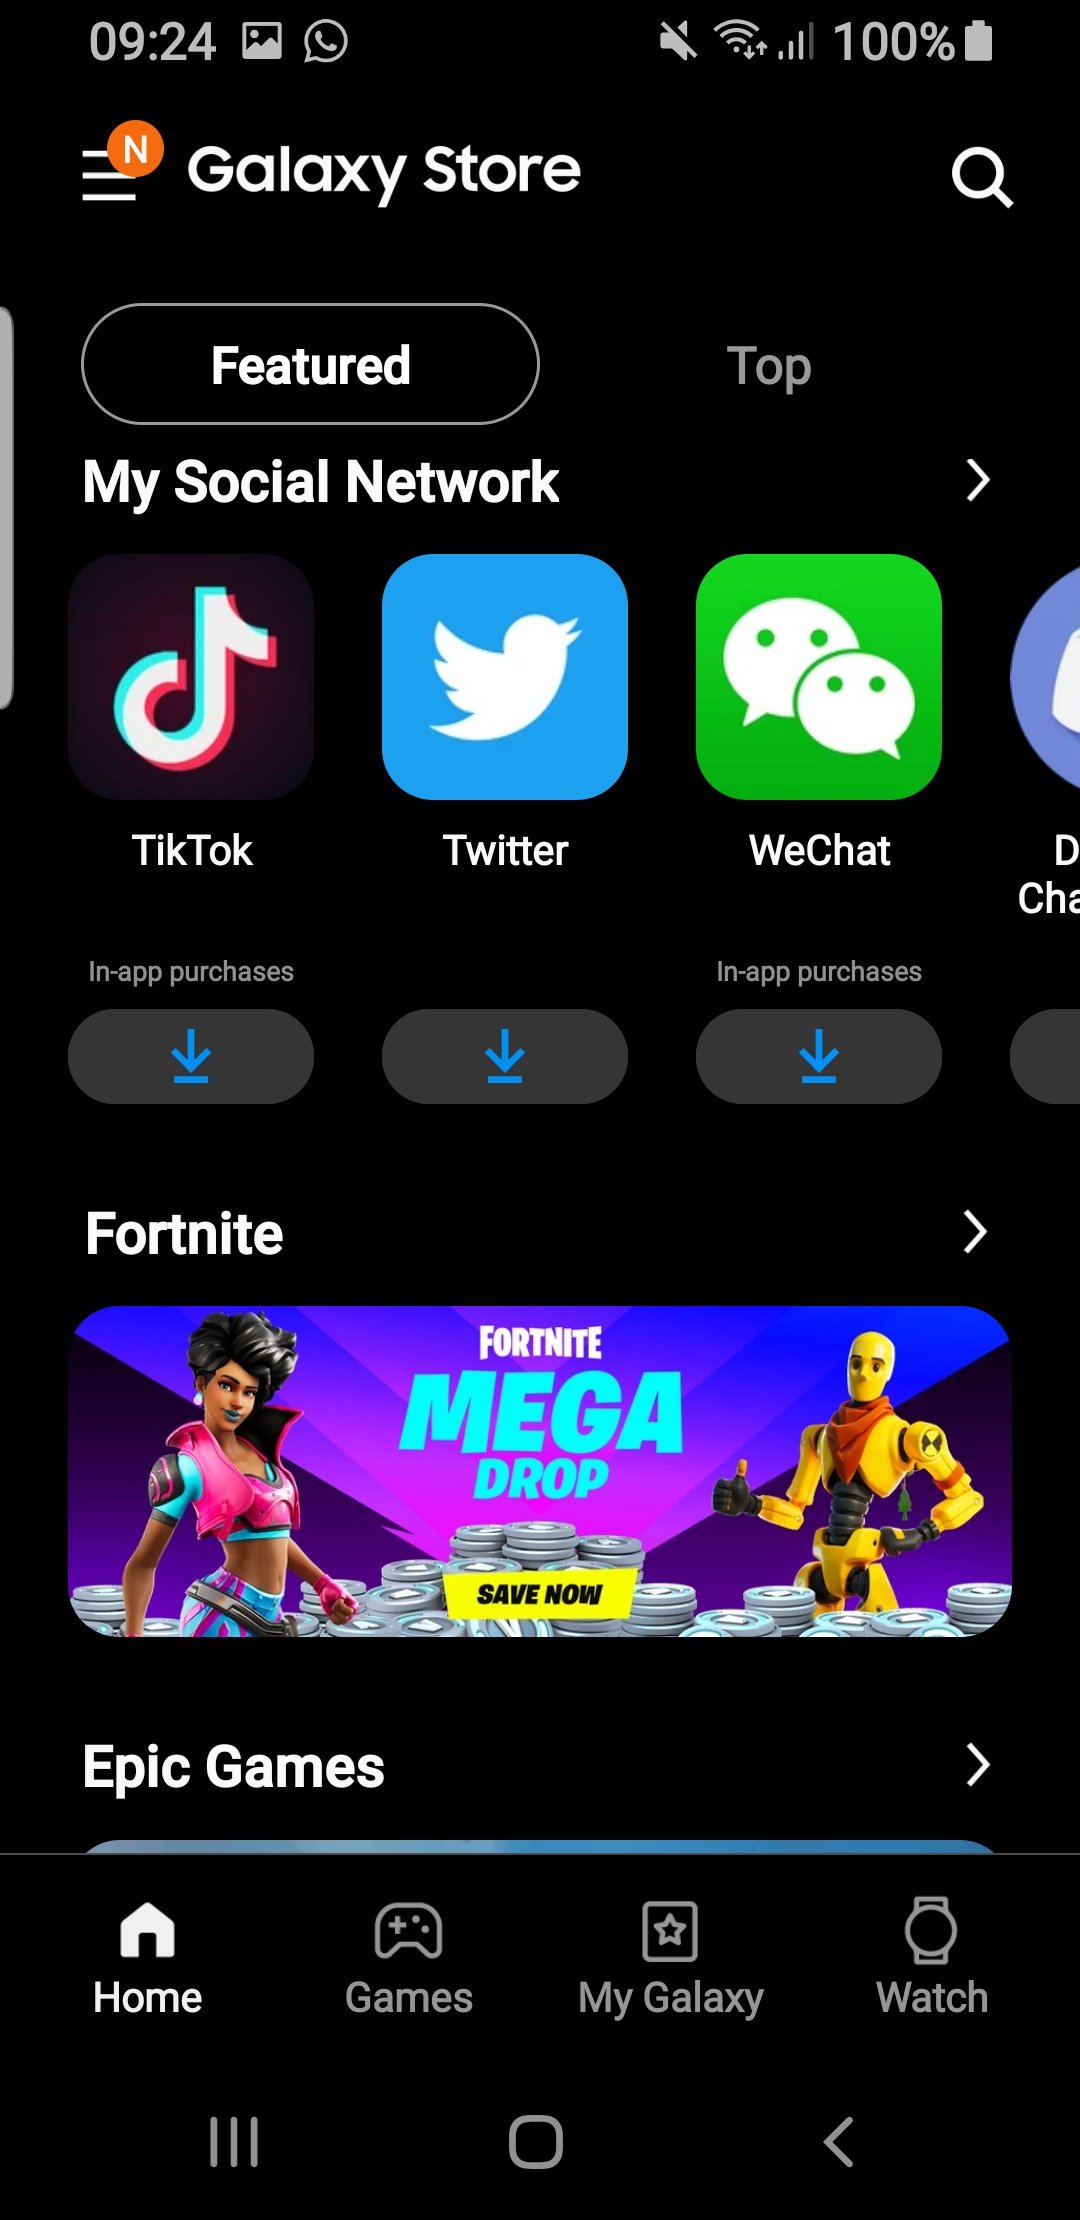 Fortnite sai da Play Store, mas ainda pode ser baixado na Galaxy Store e  site da Epic